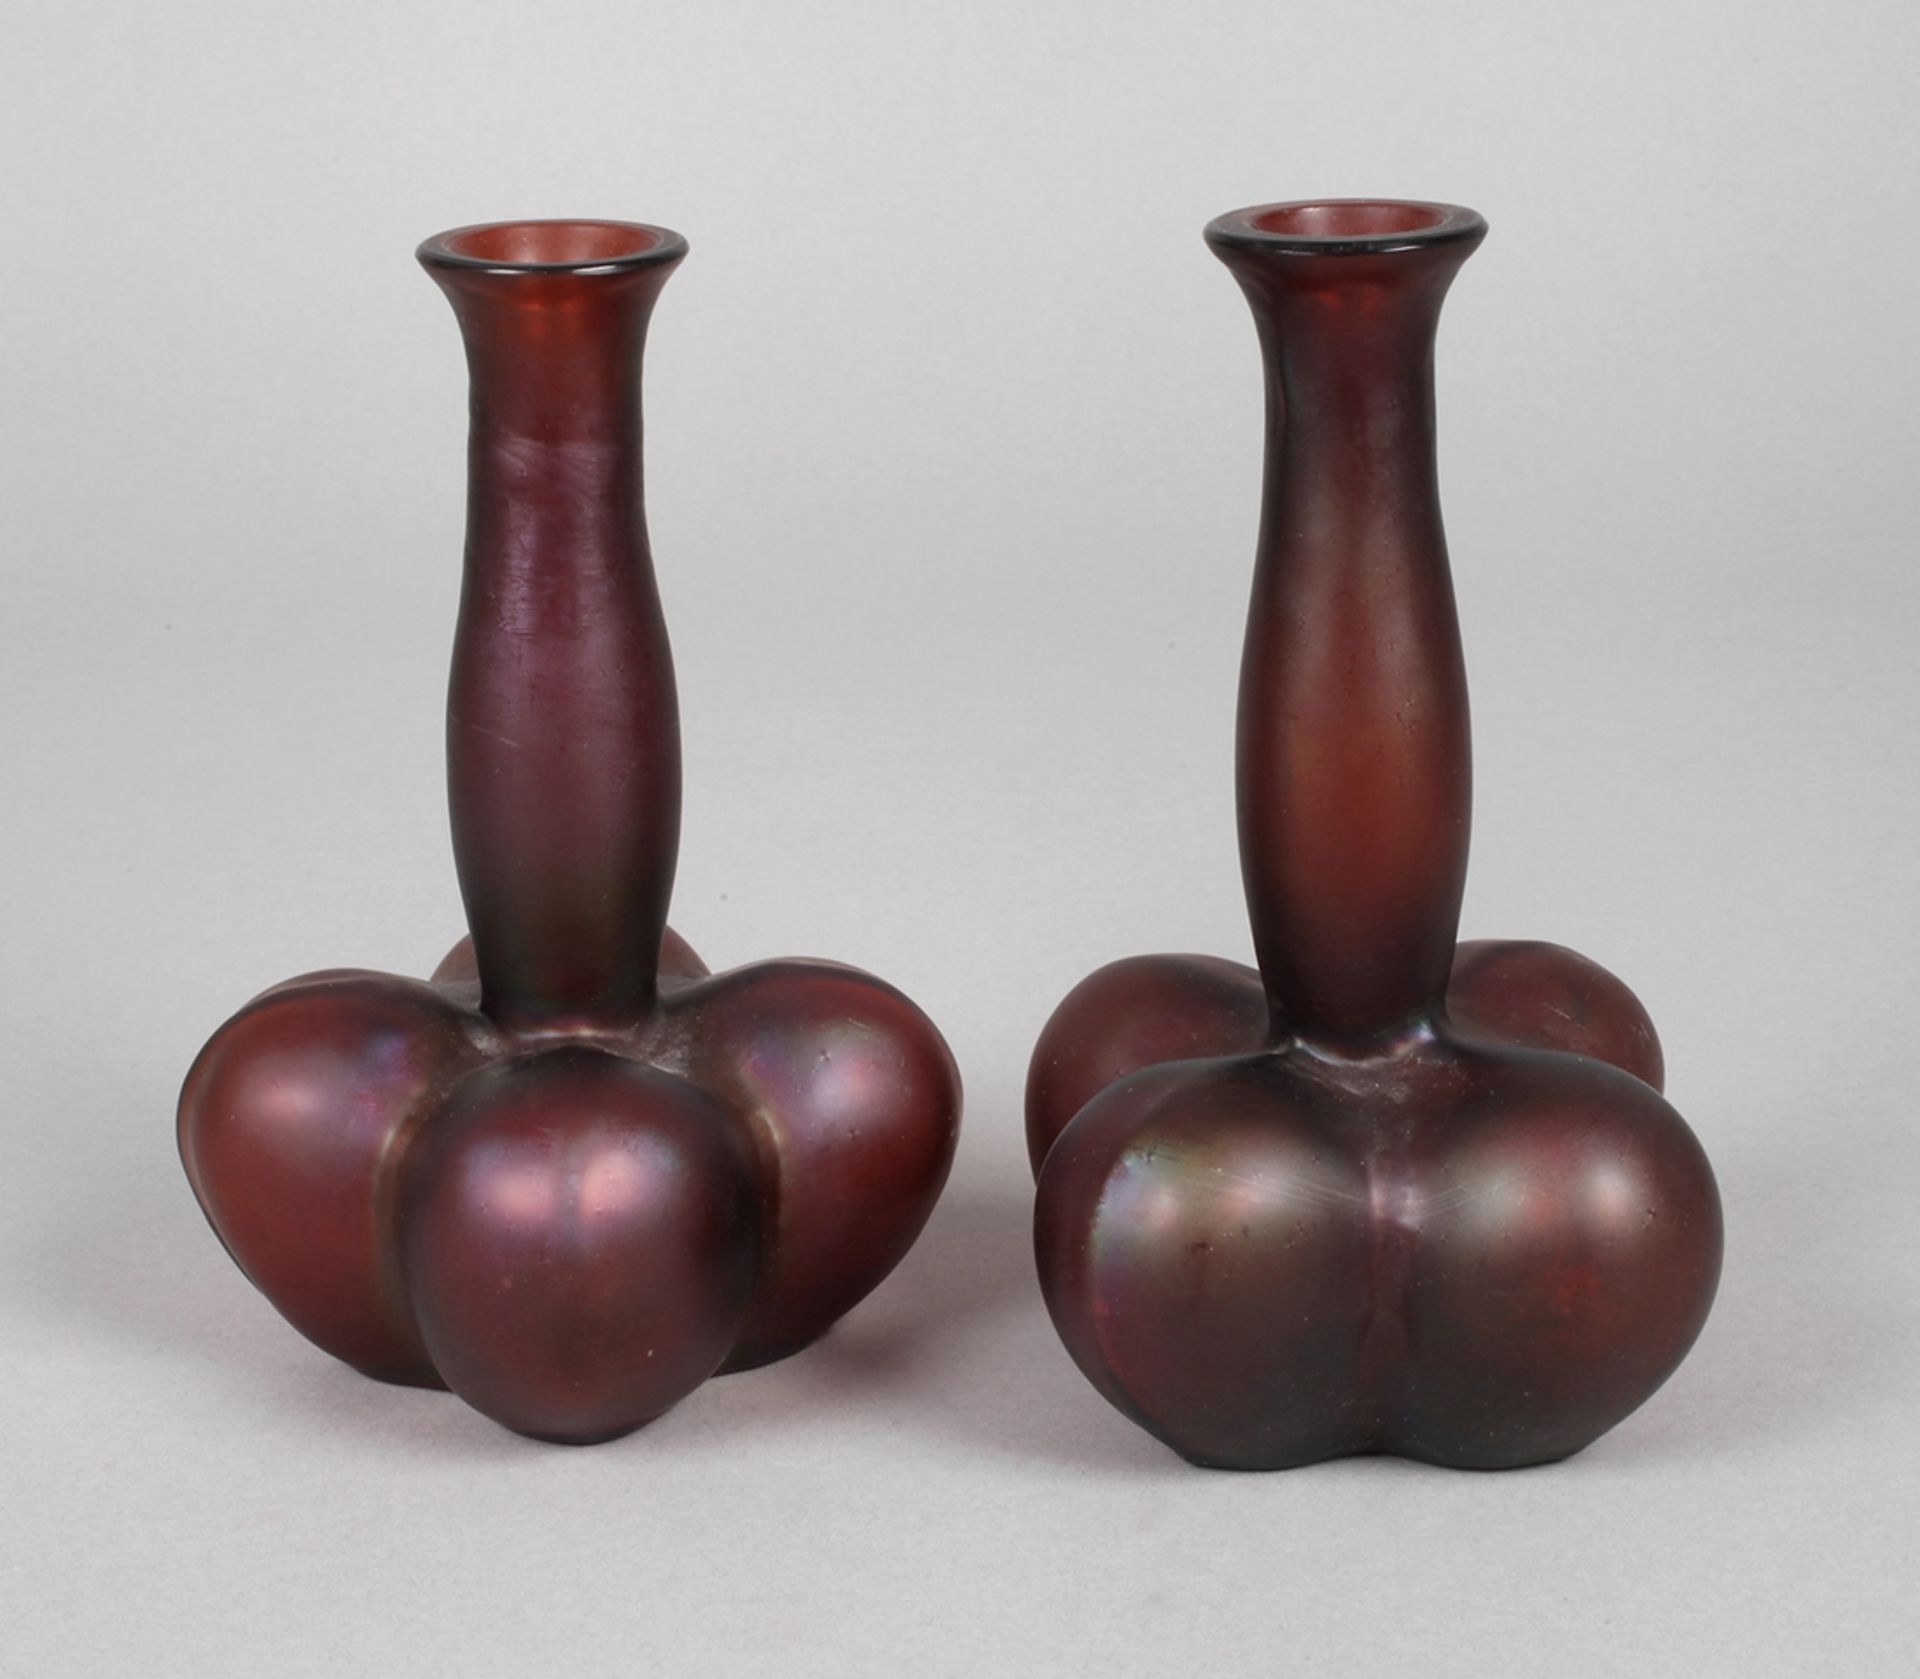 Vasenpaar Rubinglas um 1900, formgeblasen, vierpassig stark gebaucht, mit schlankem Hals und